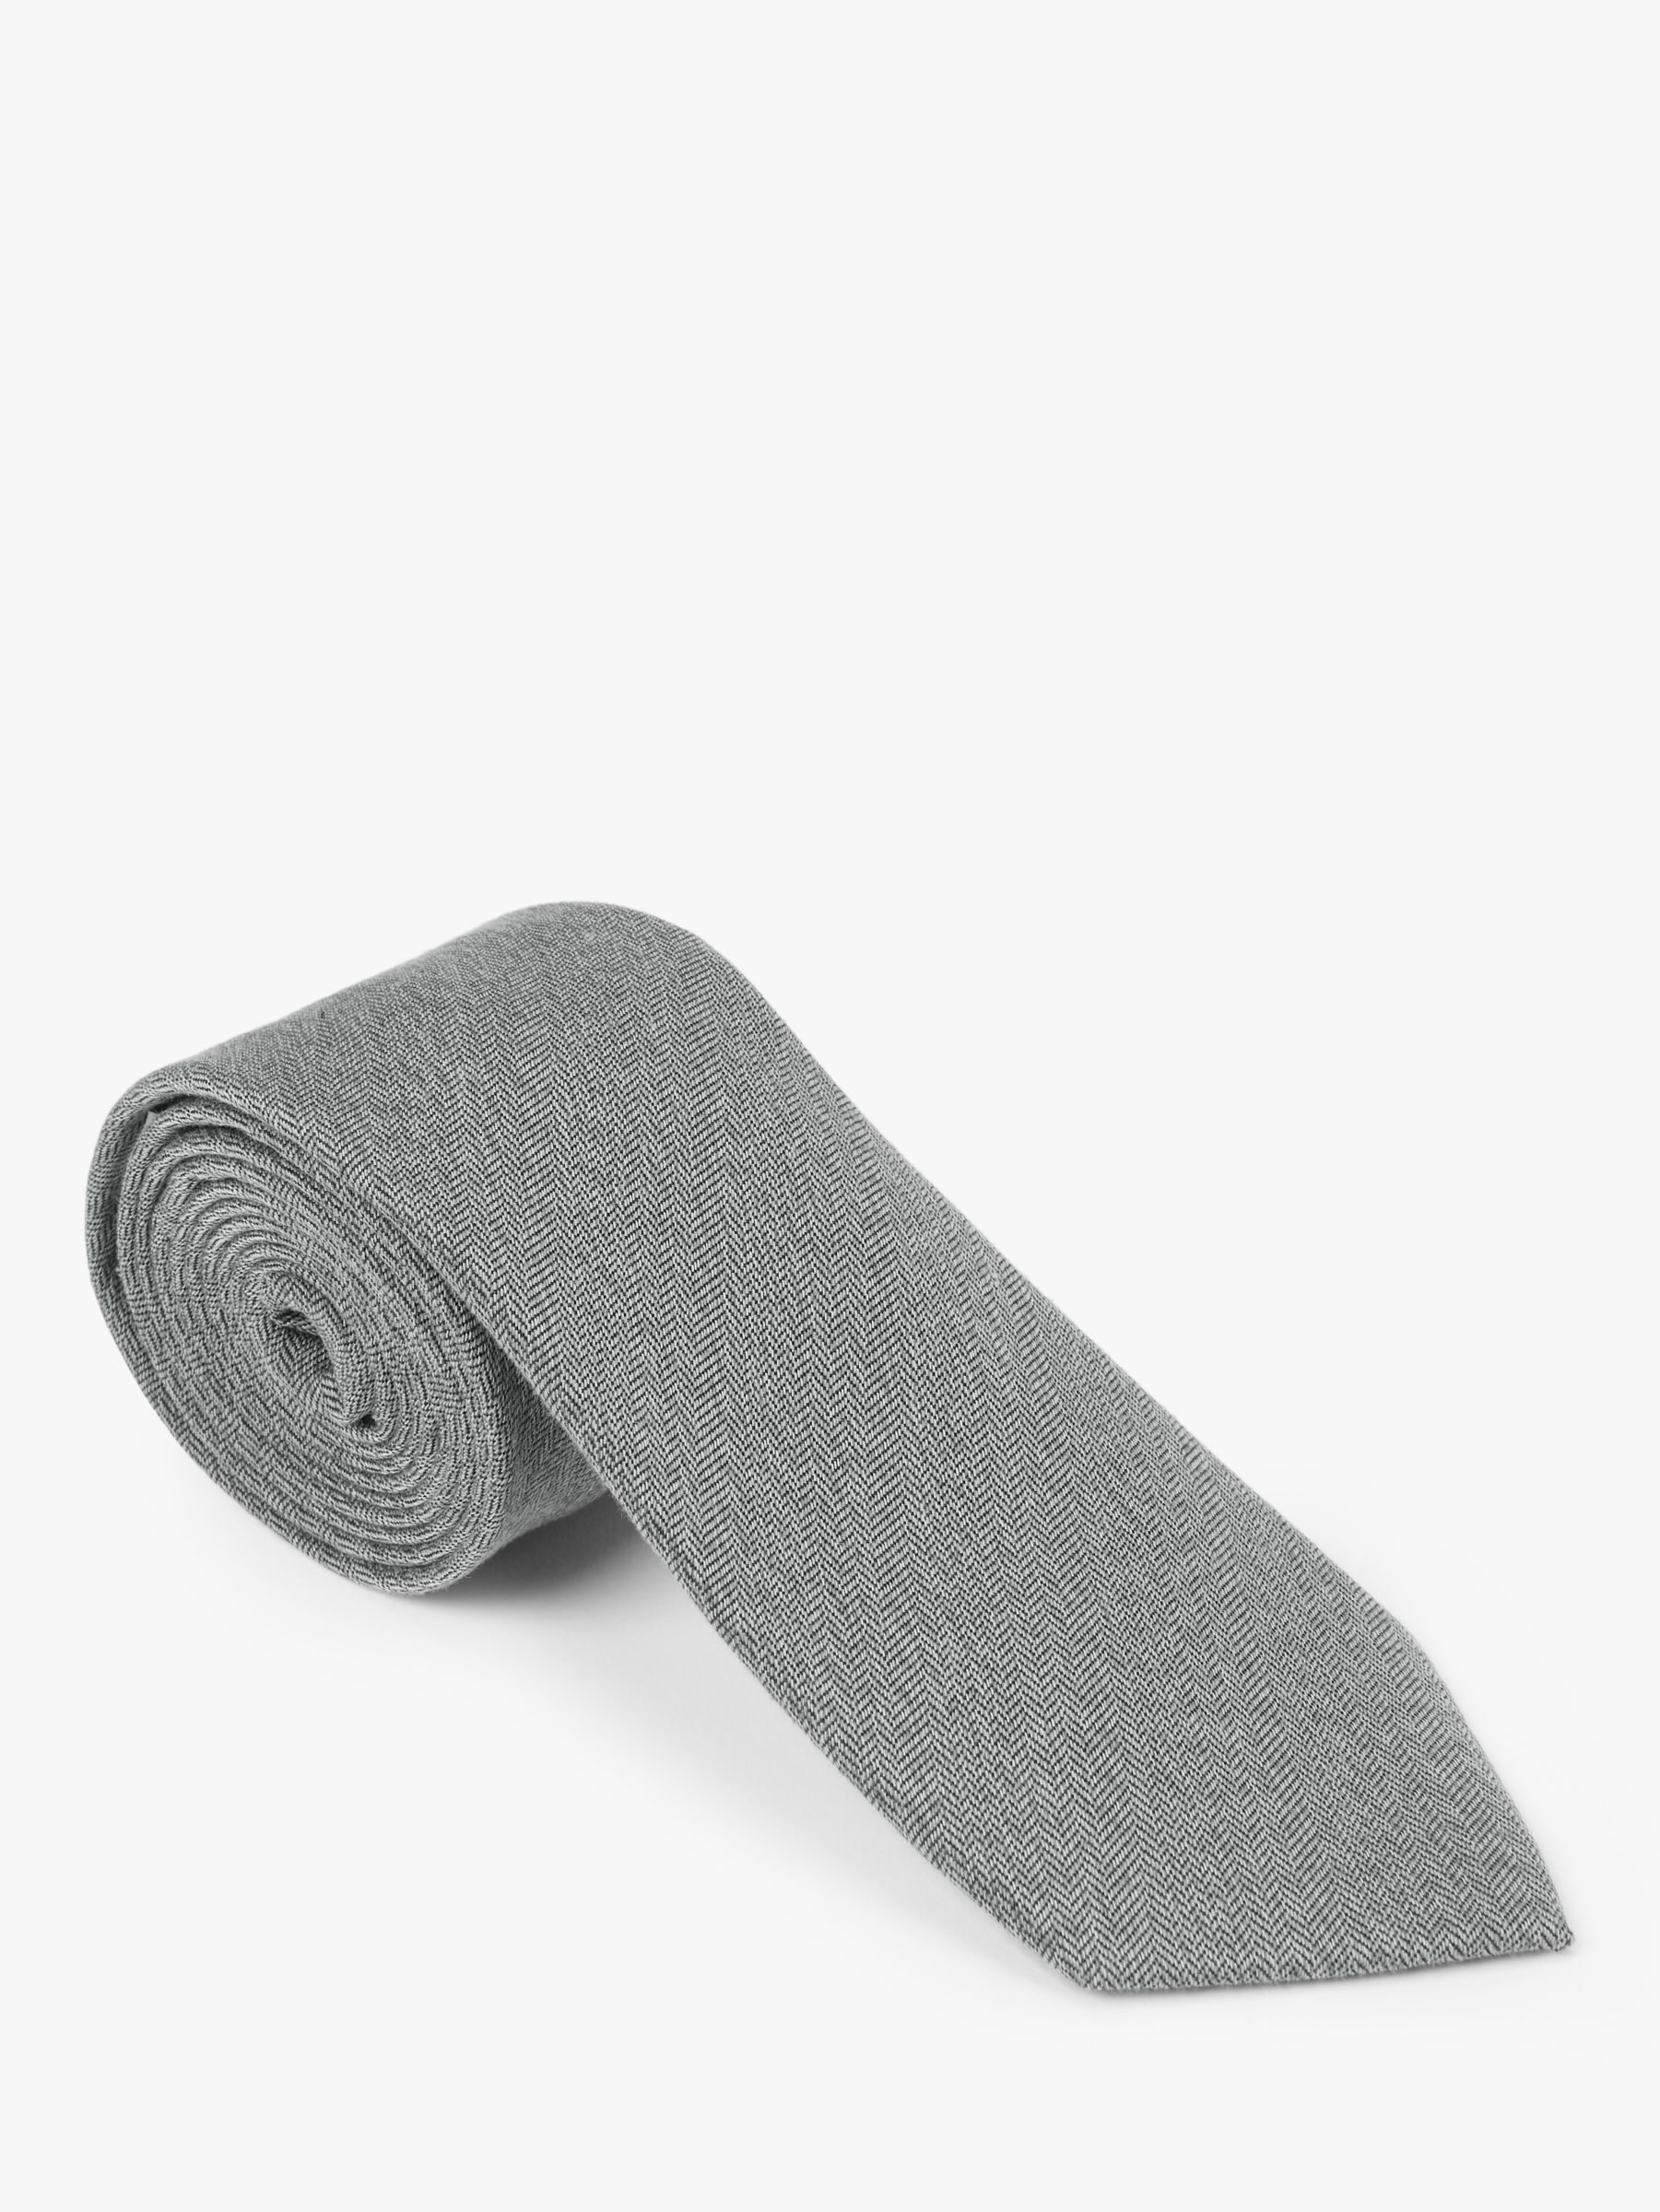 John Lewis & Partners Herringbone Tie, Fine Grey at John Lewis & Partners